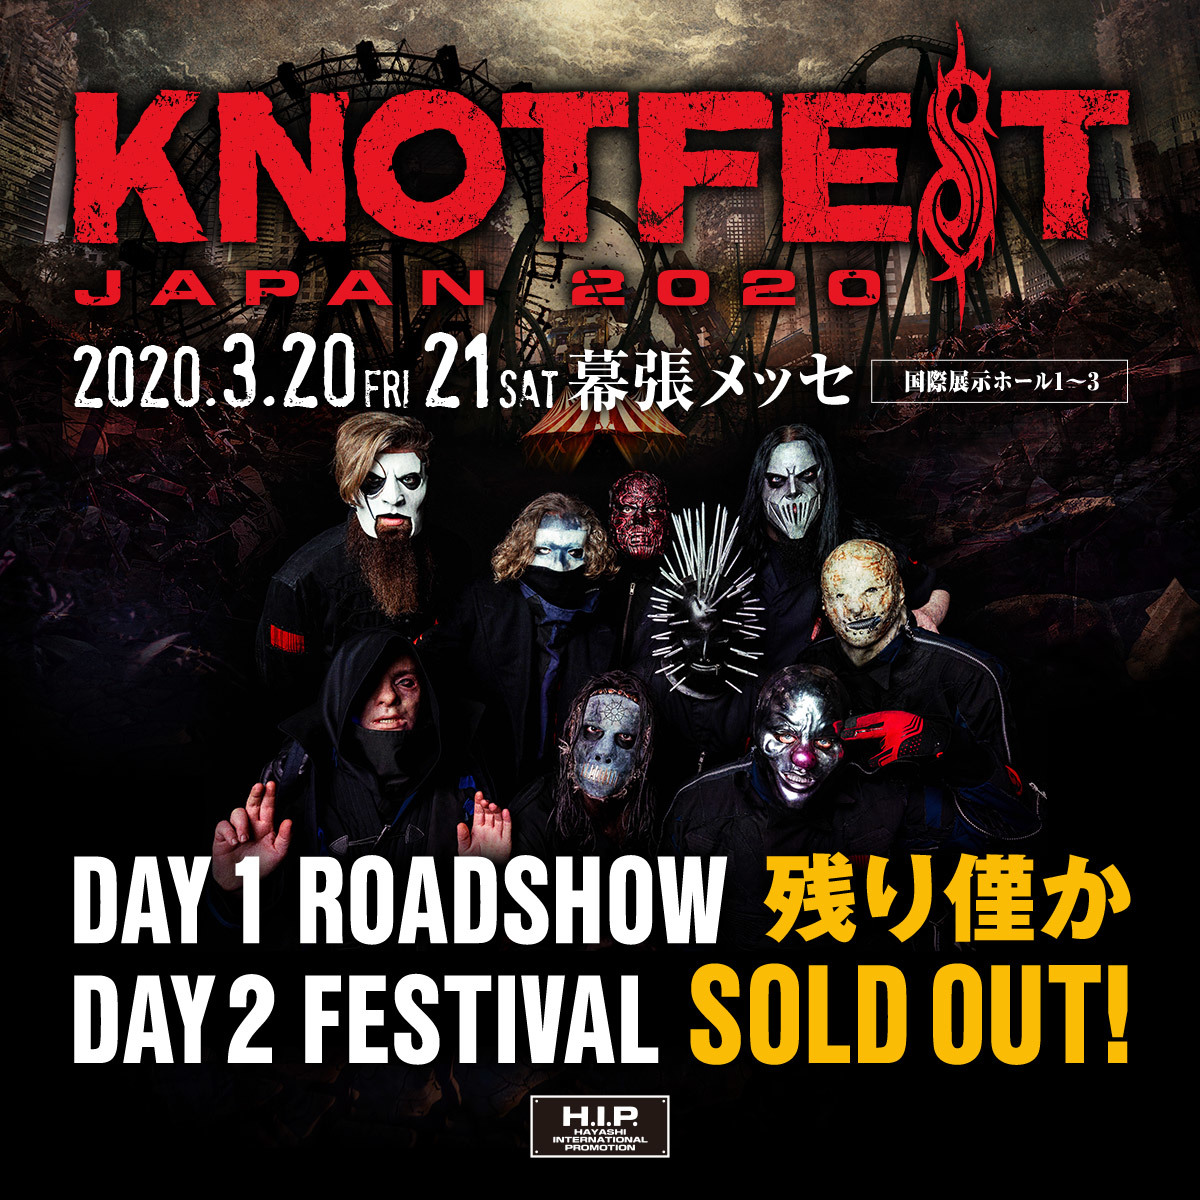 KNOTFEST JAPAN 2020』DAY2“FESTIVAL”のチケットがソールドアウト